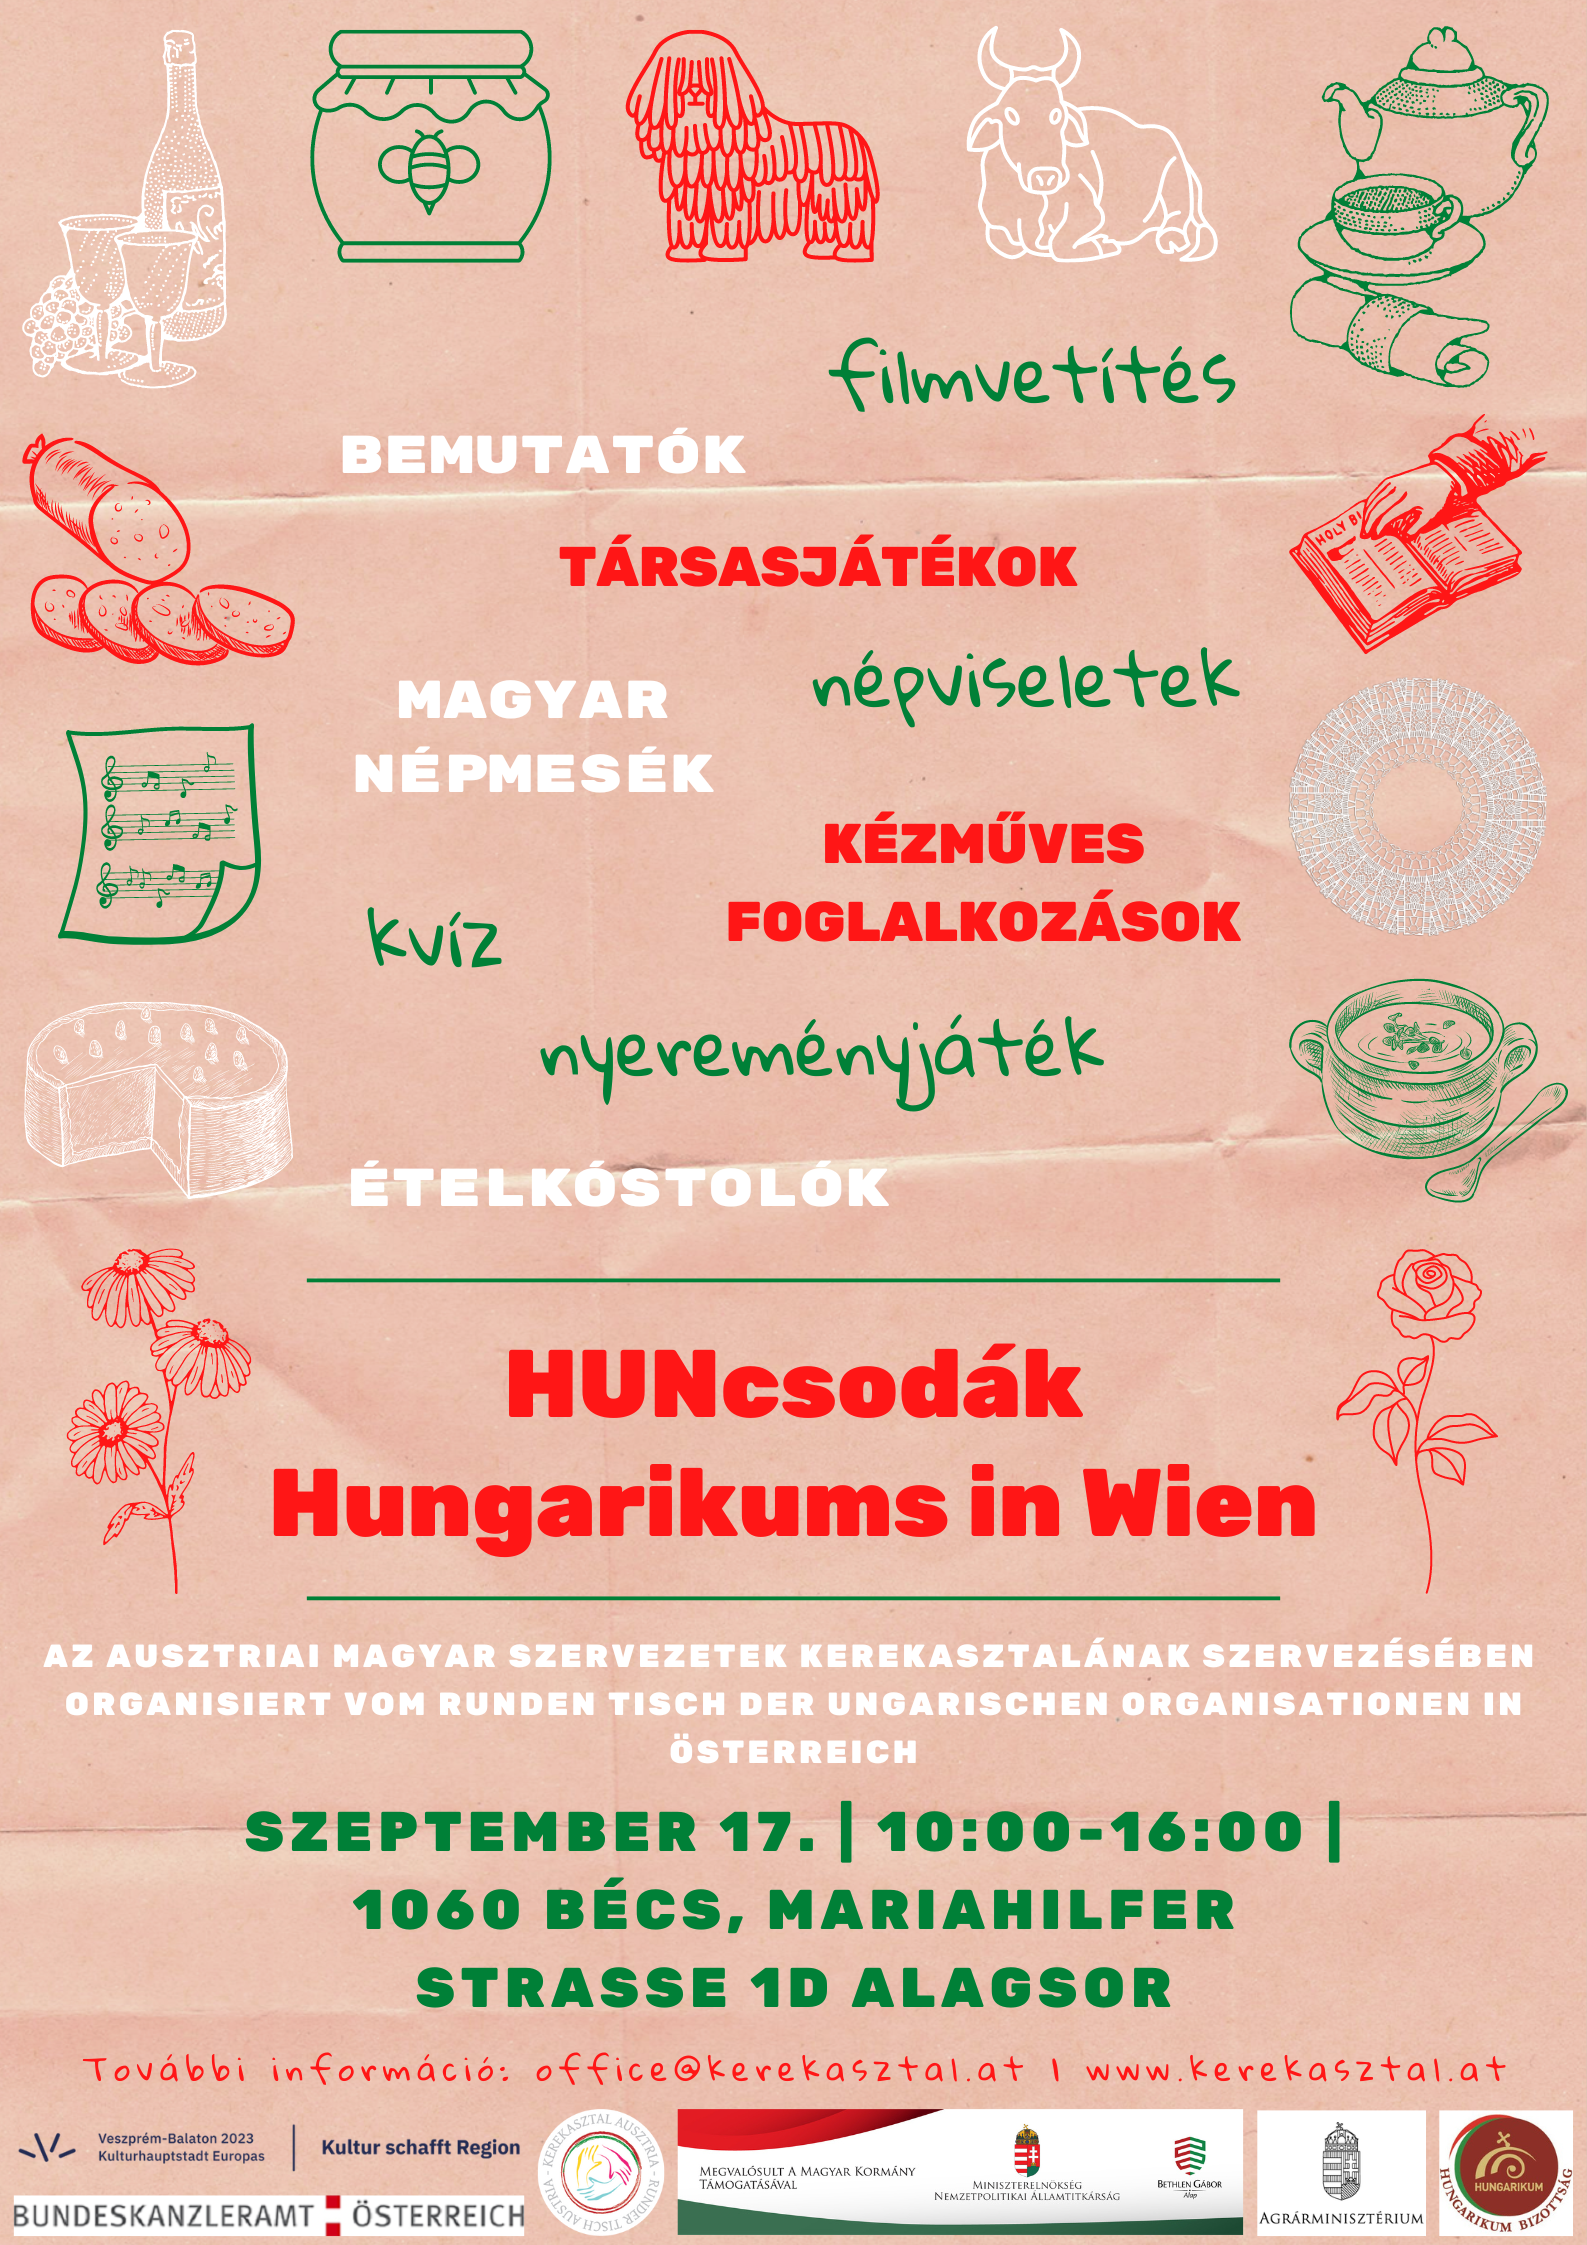 Hungarikumokhoz kapcsolódó programokkal várjuk az érdeklődőket!